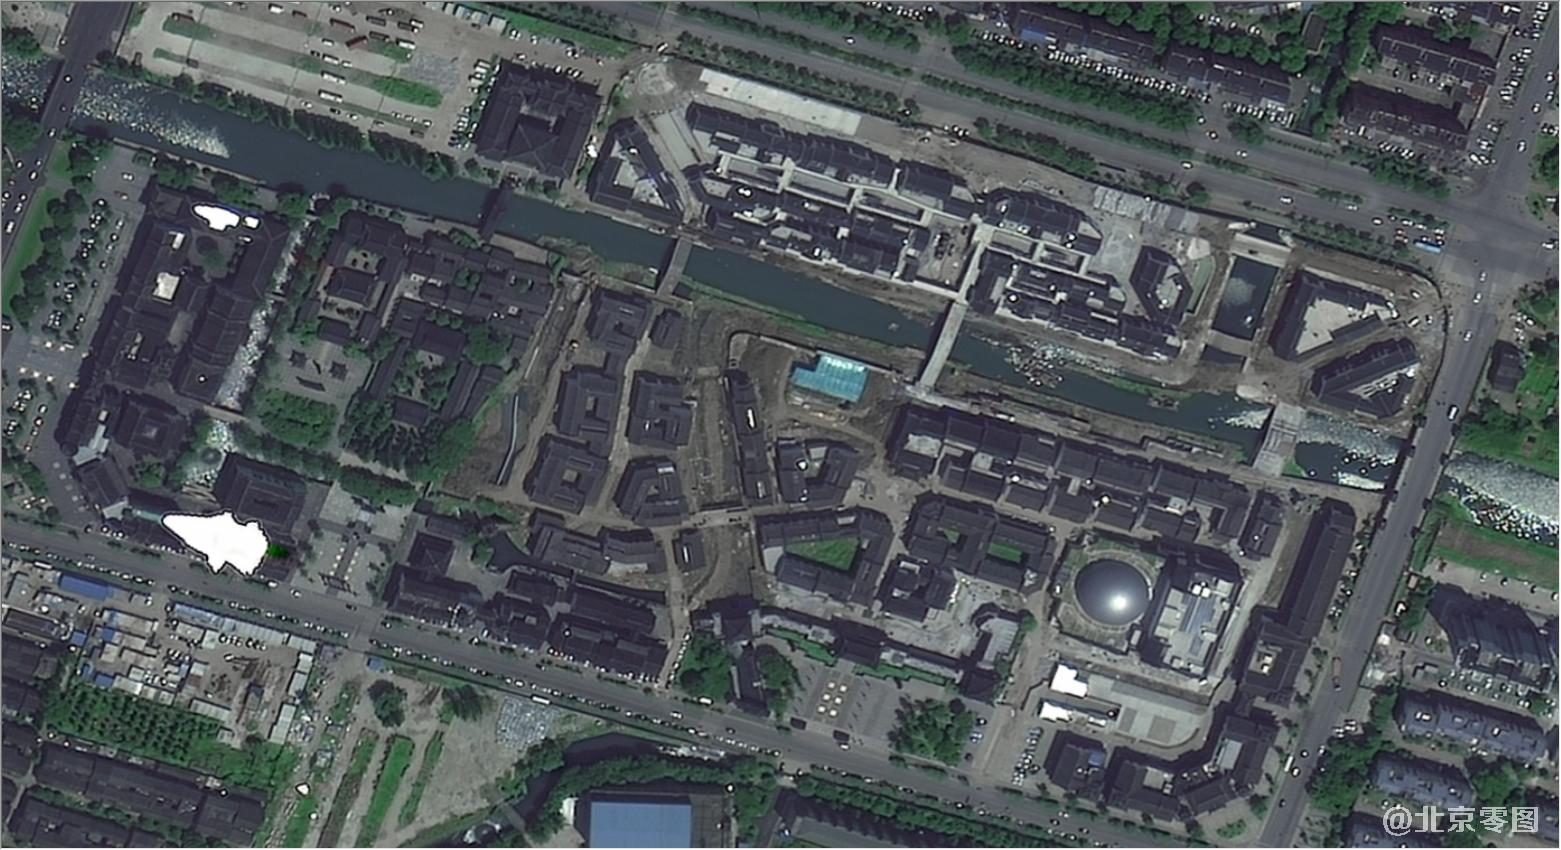 0.5米分辨率卫星图样例